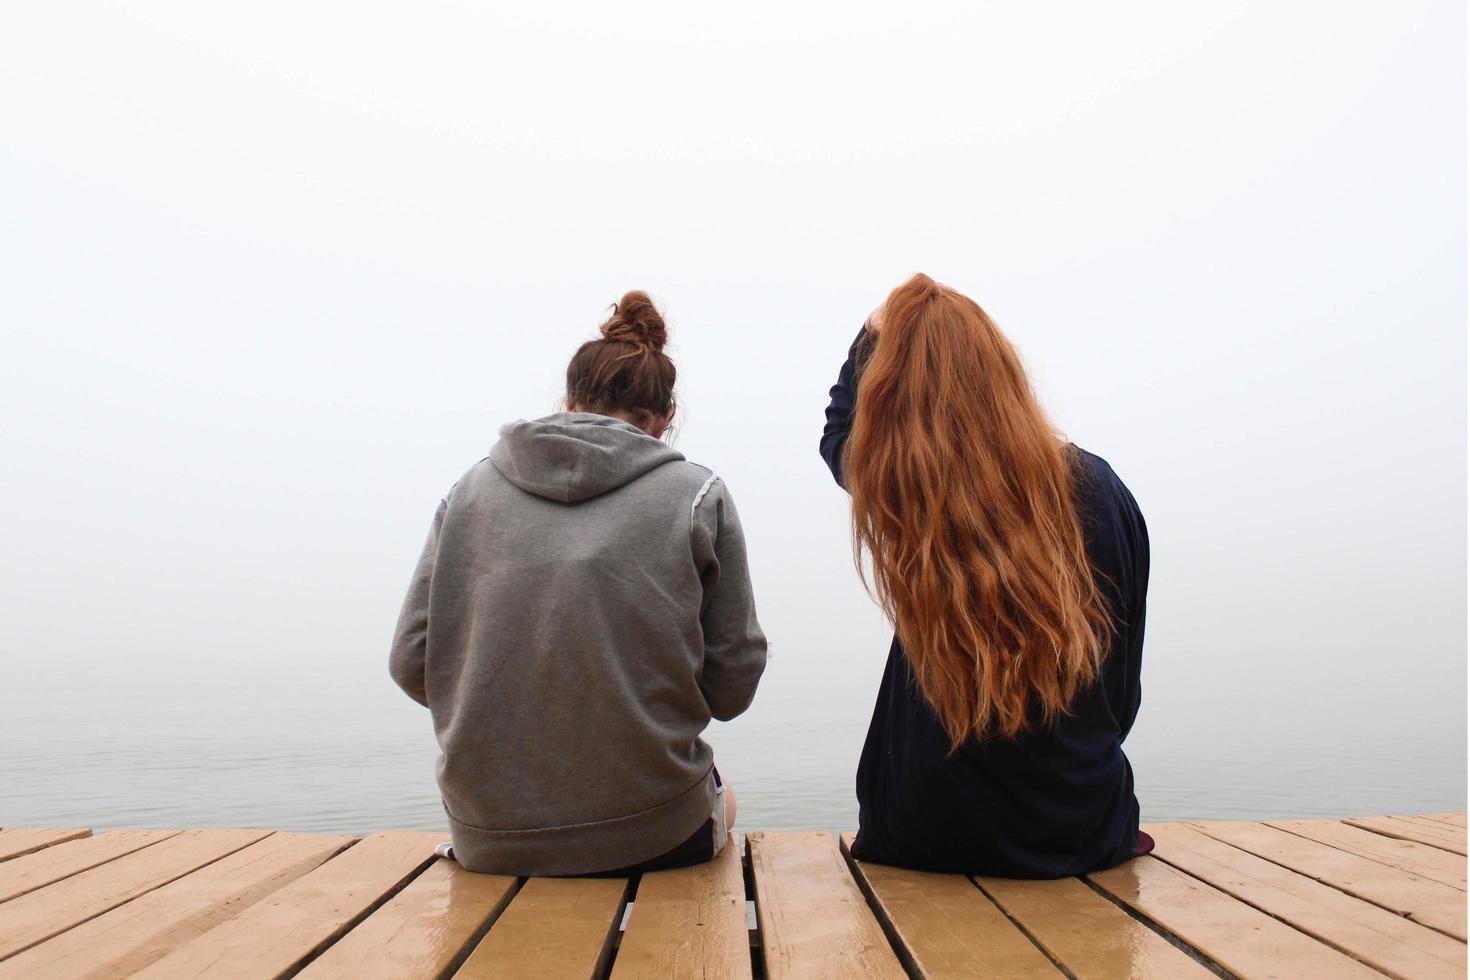 due donne sedute su un molo in legno foto